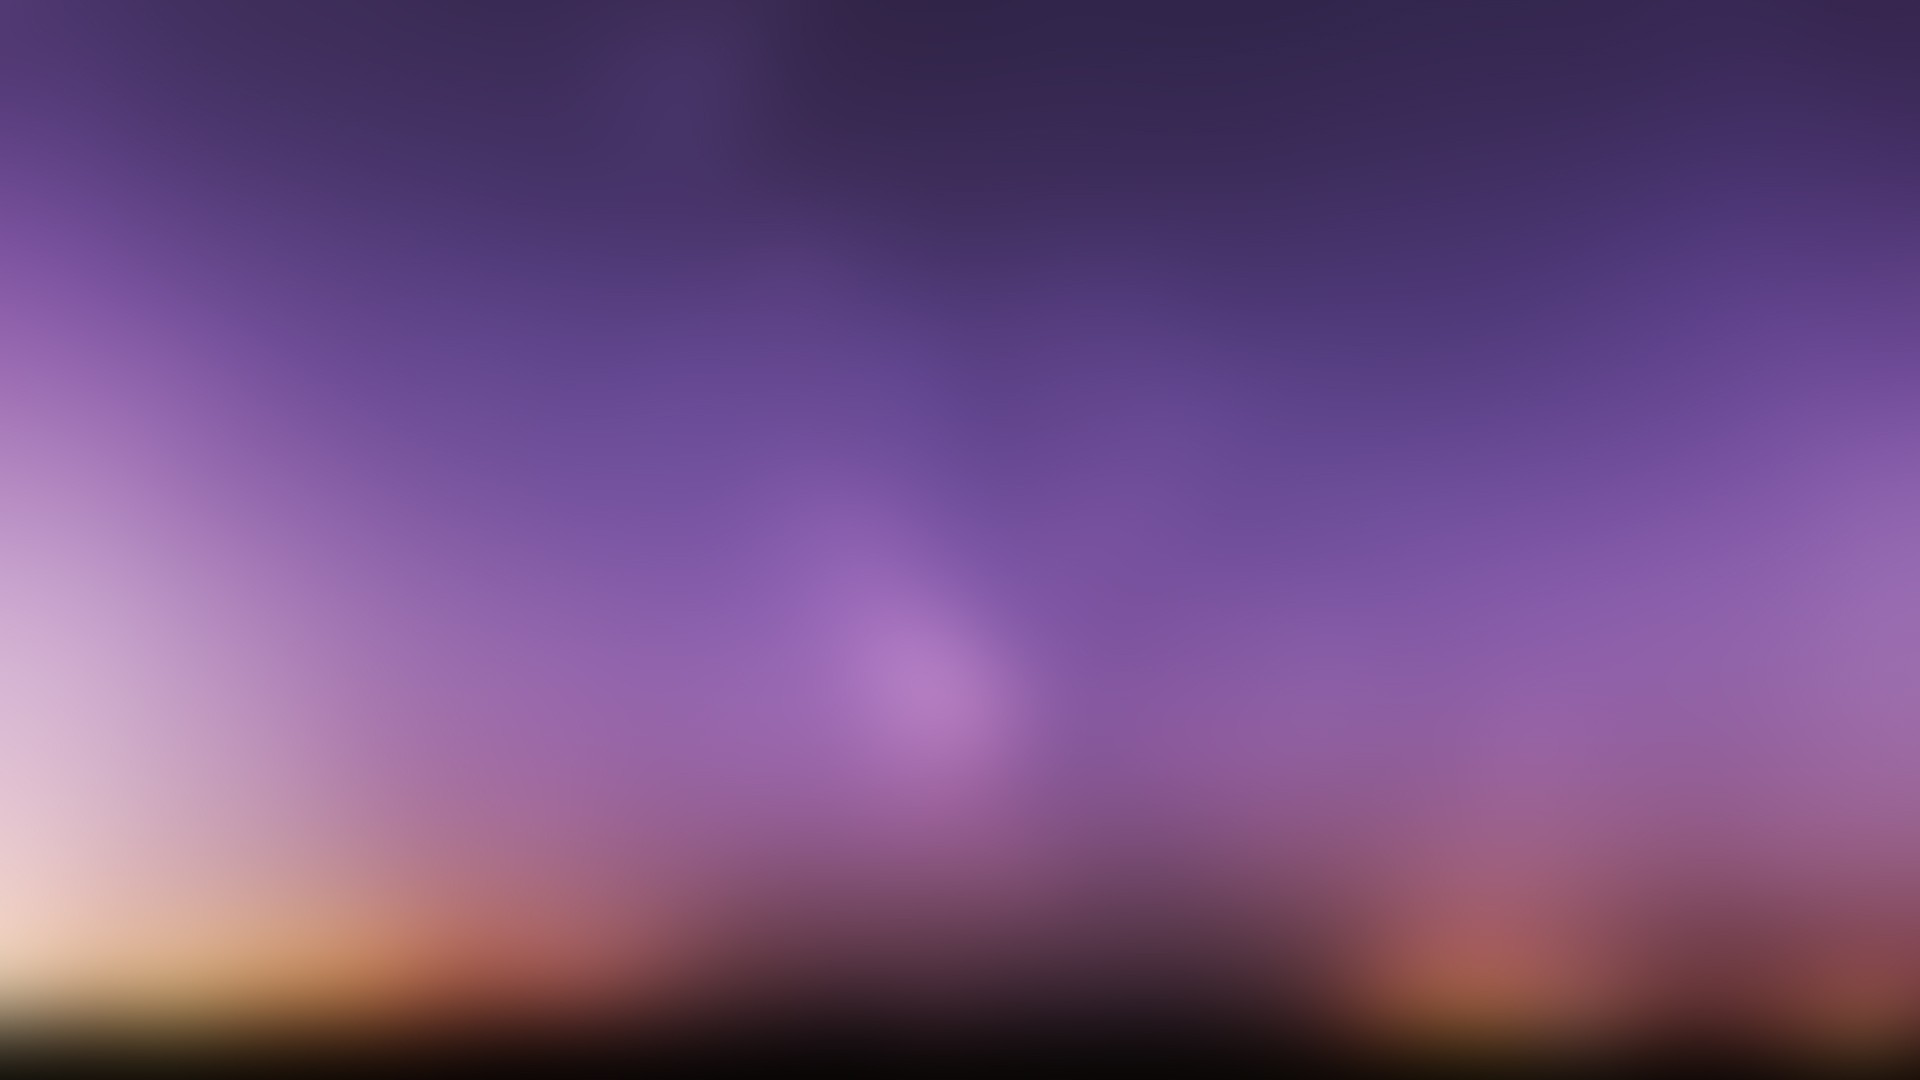 General 1920x1080 minimalism blurred gradient purple